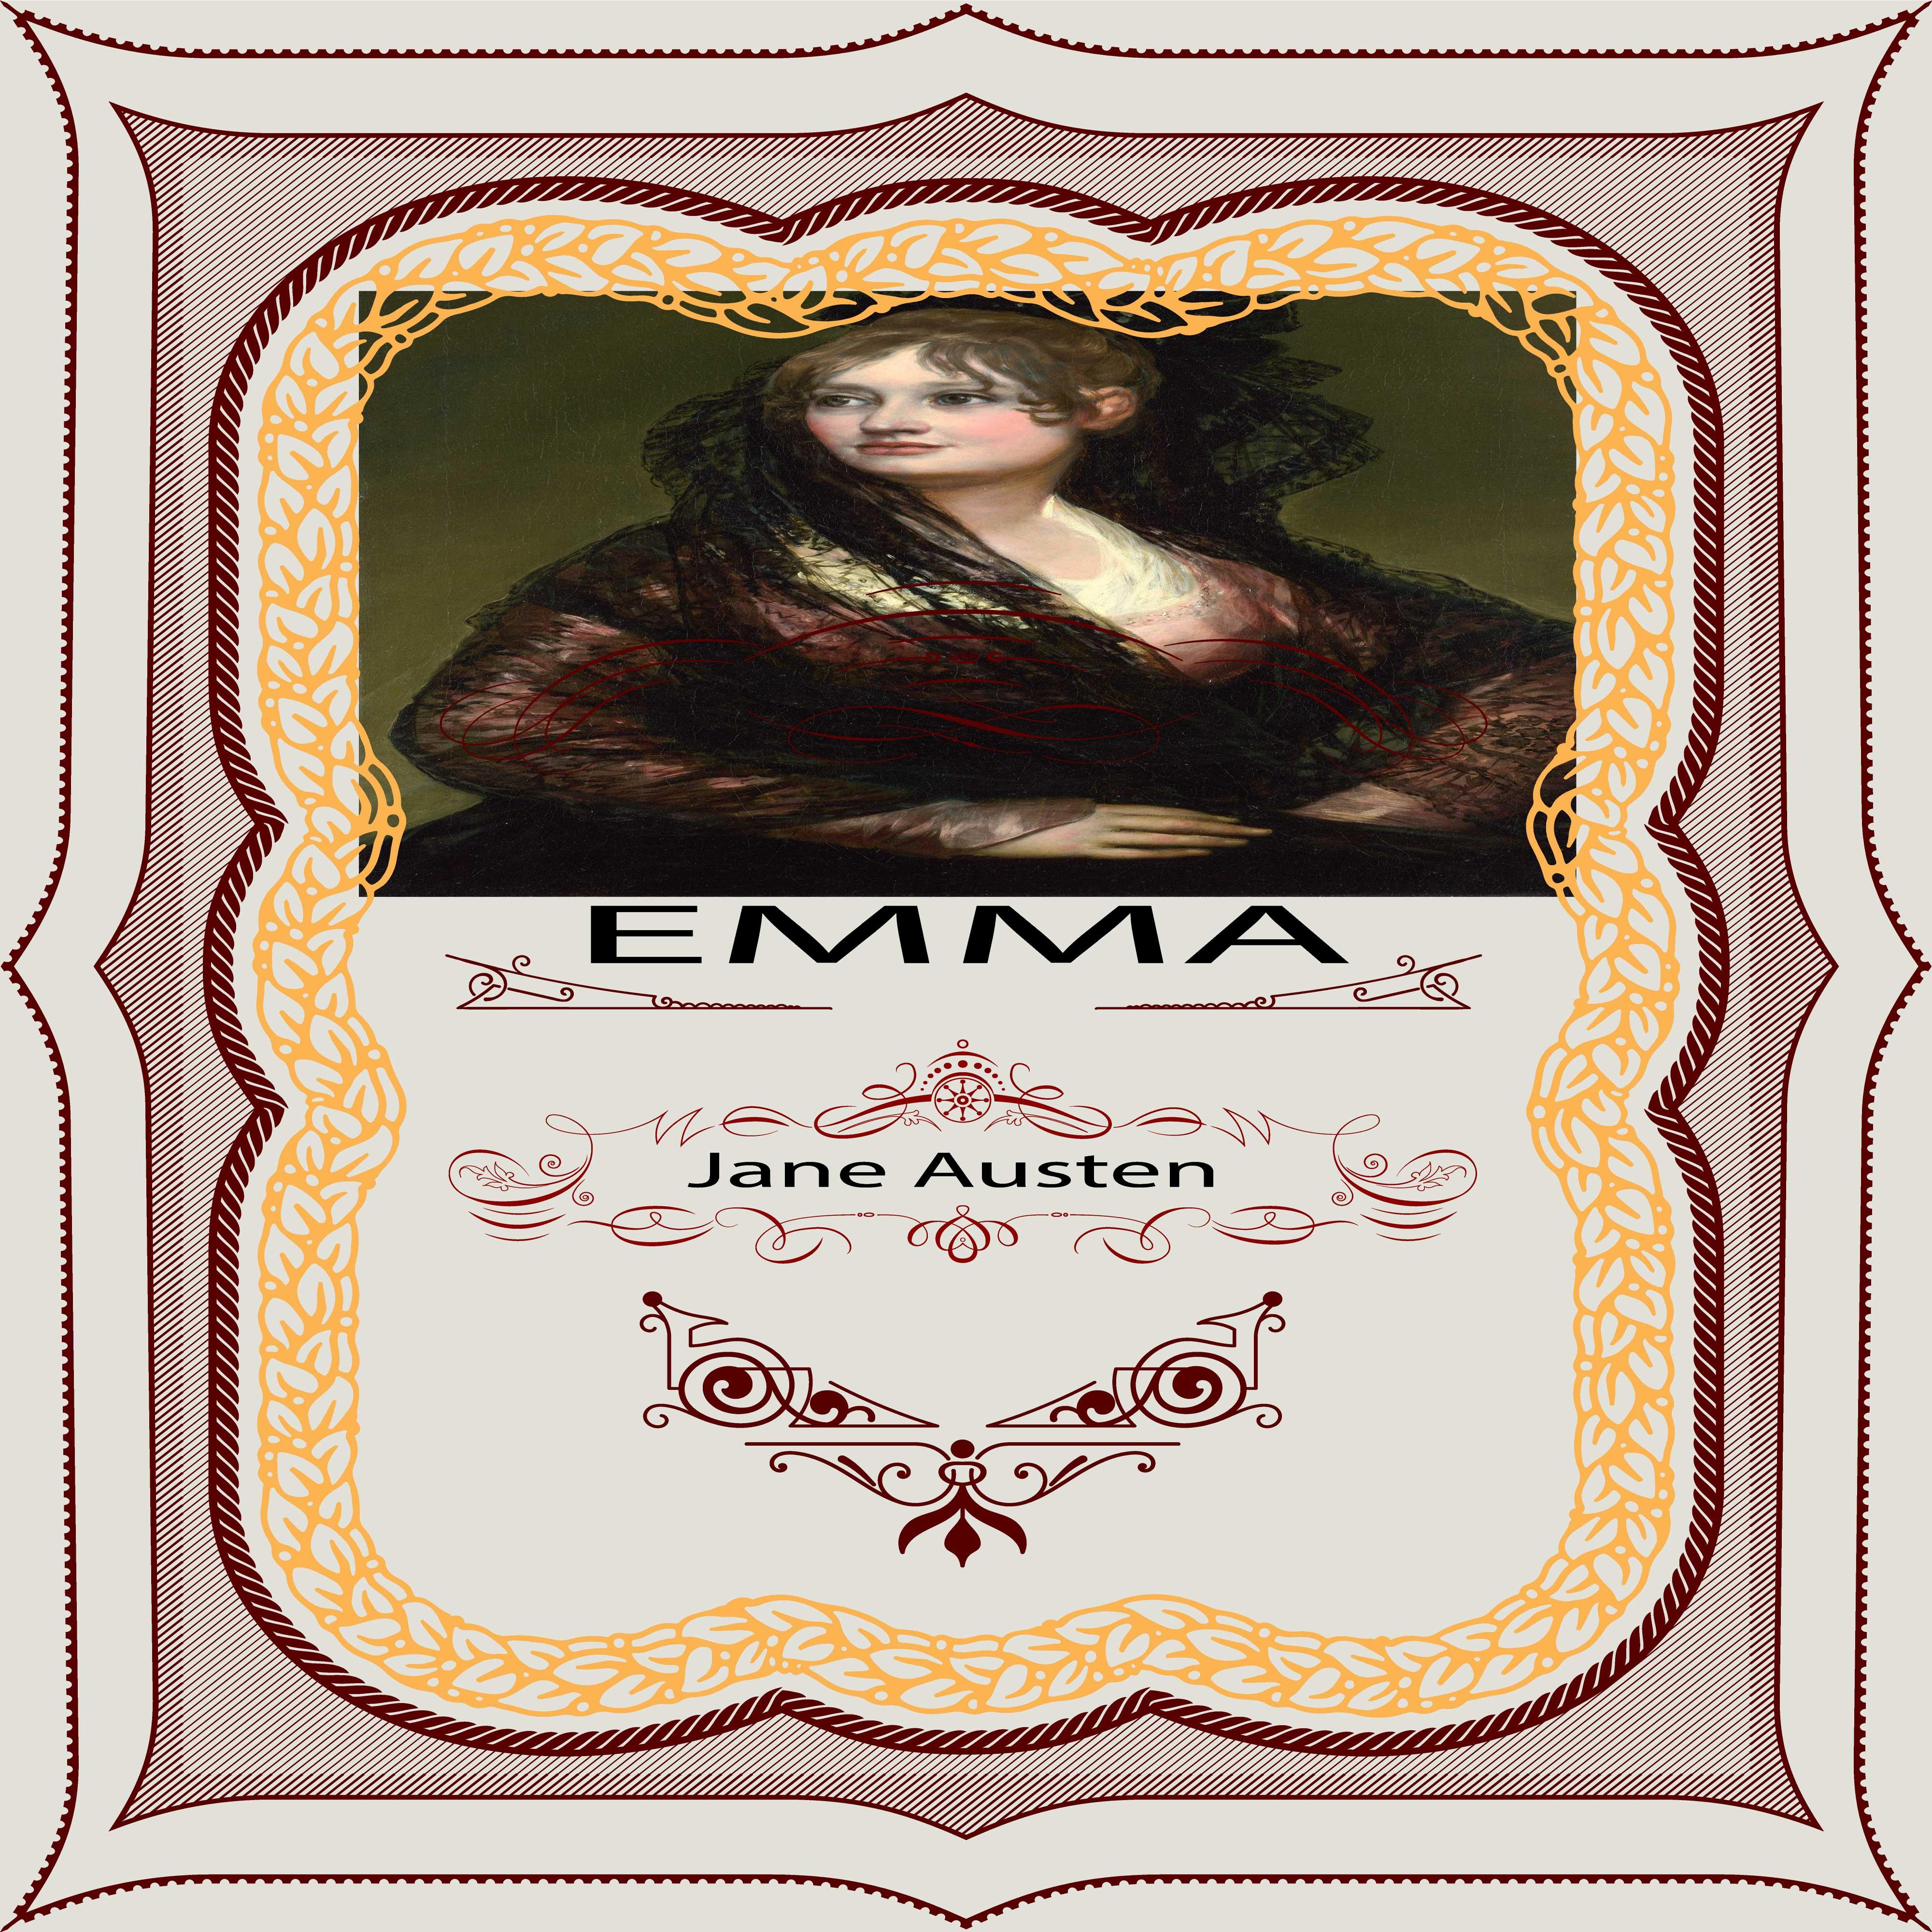 Jane Austen: Emma, Pt. 3, Chapter 9